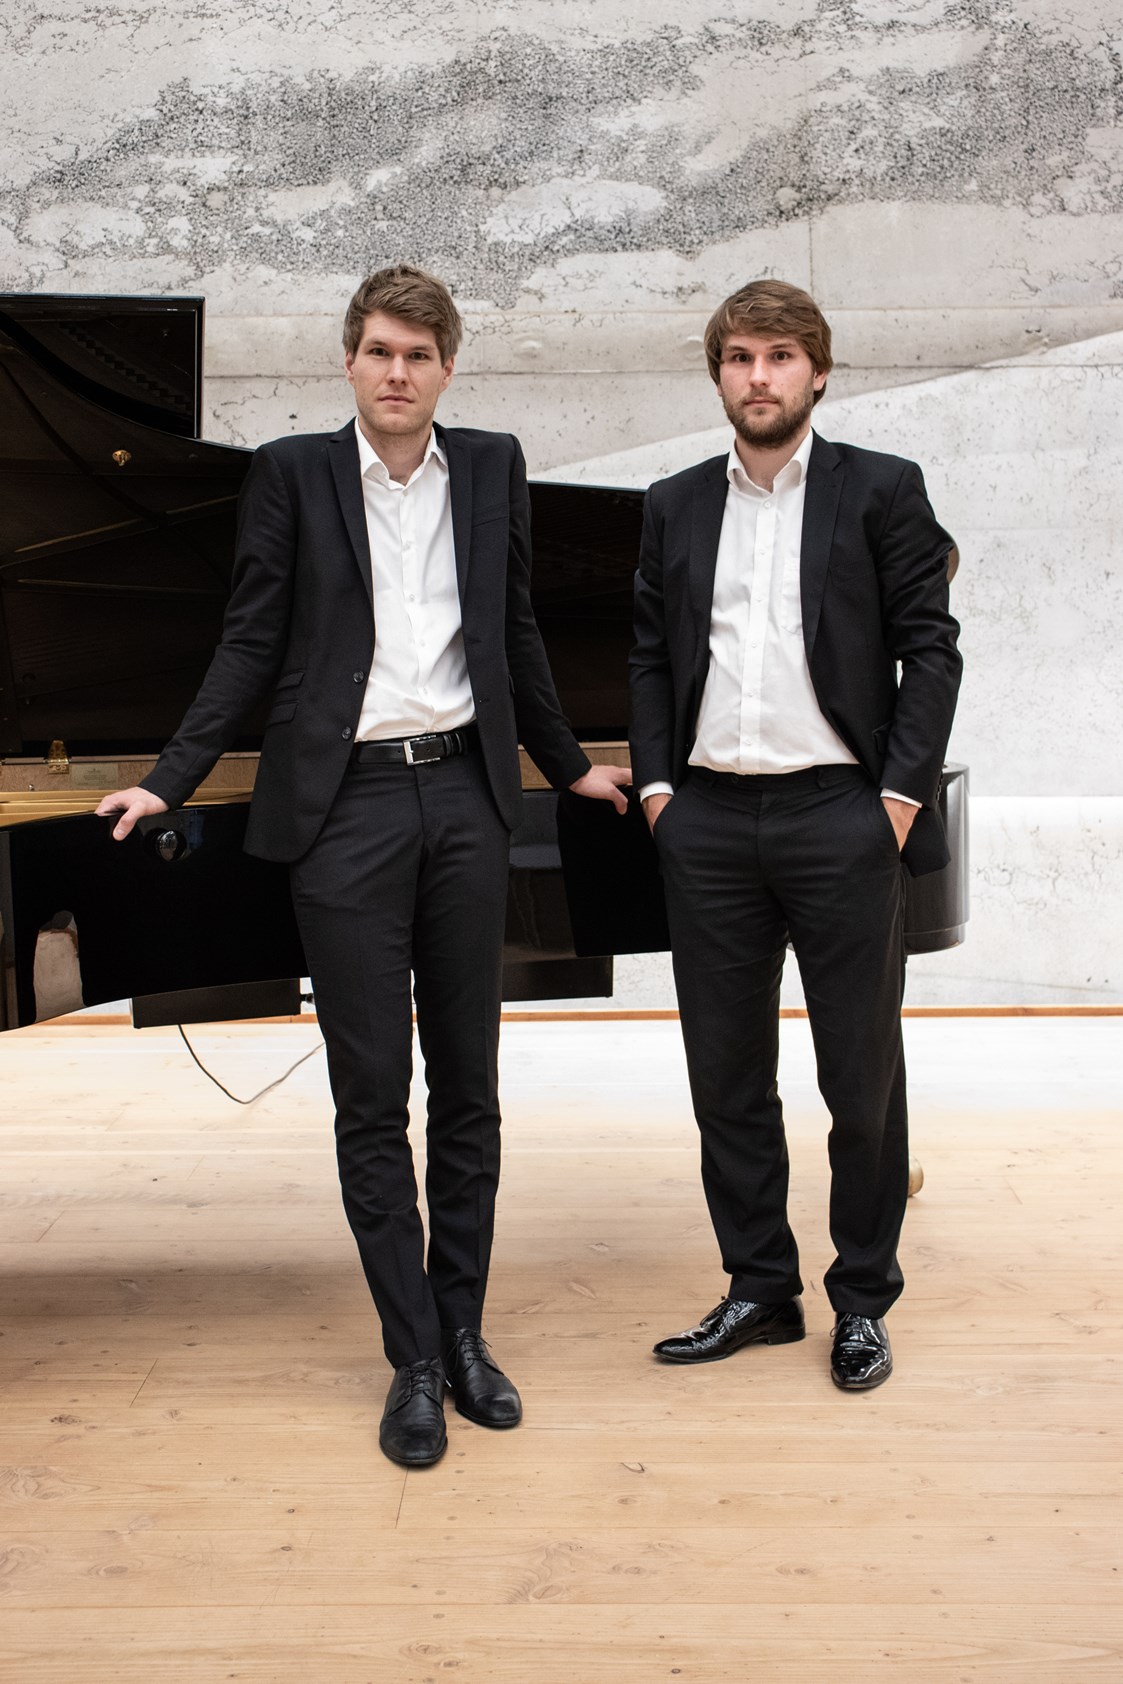 Hochzeitsband: Andreas Begert und Markus Bauer, Jazzduo Brothers in Jazz. - Brothers in Jazz